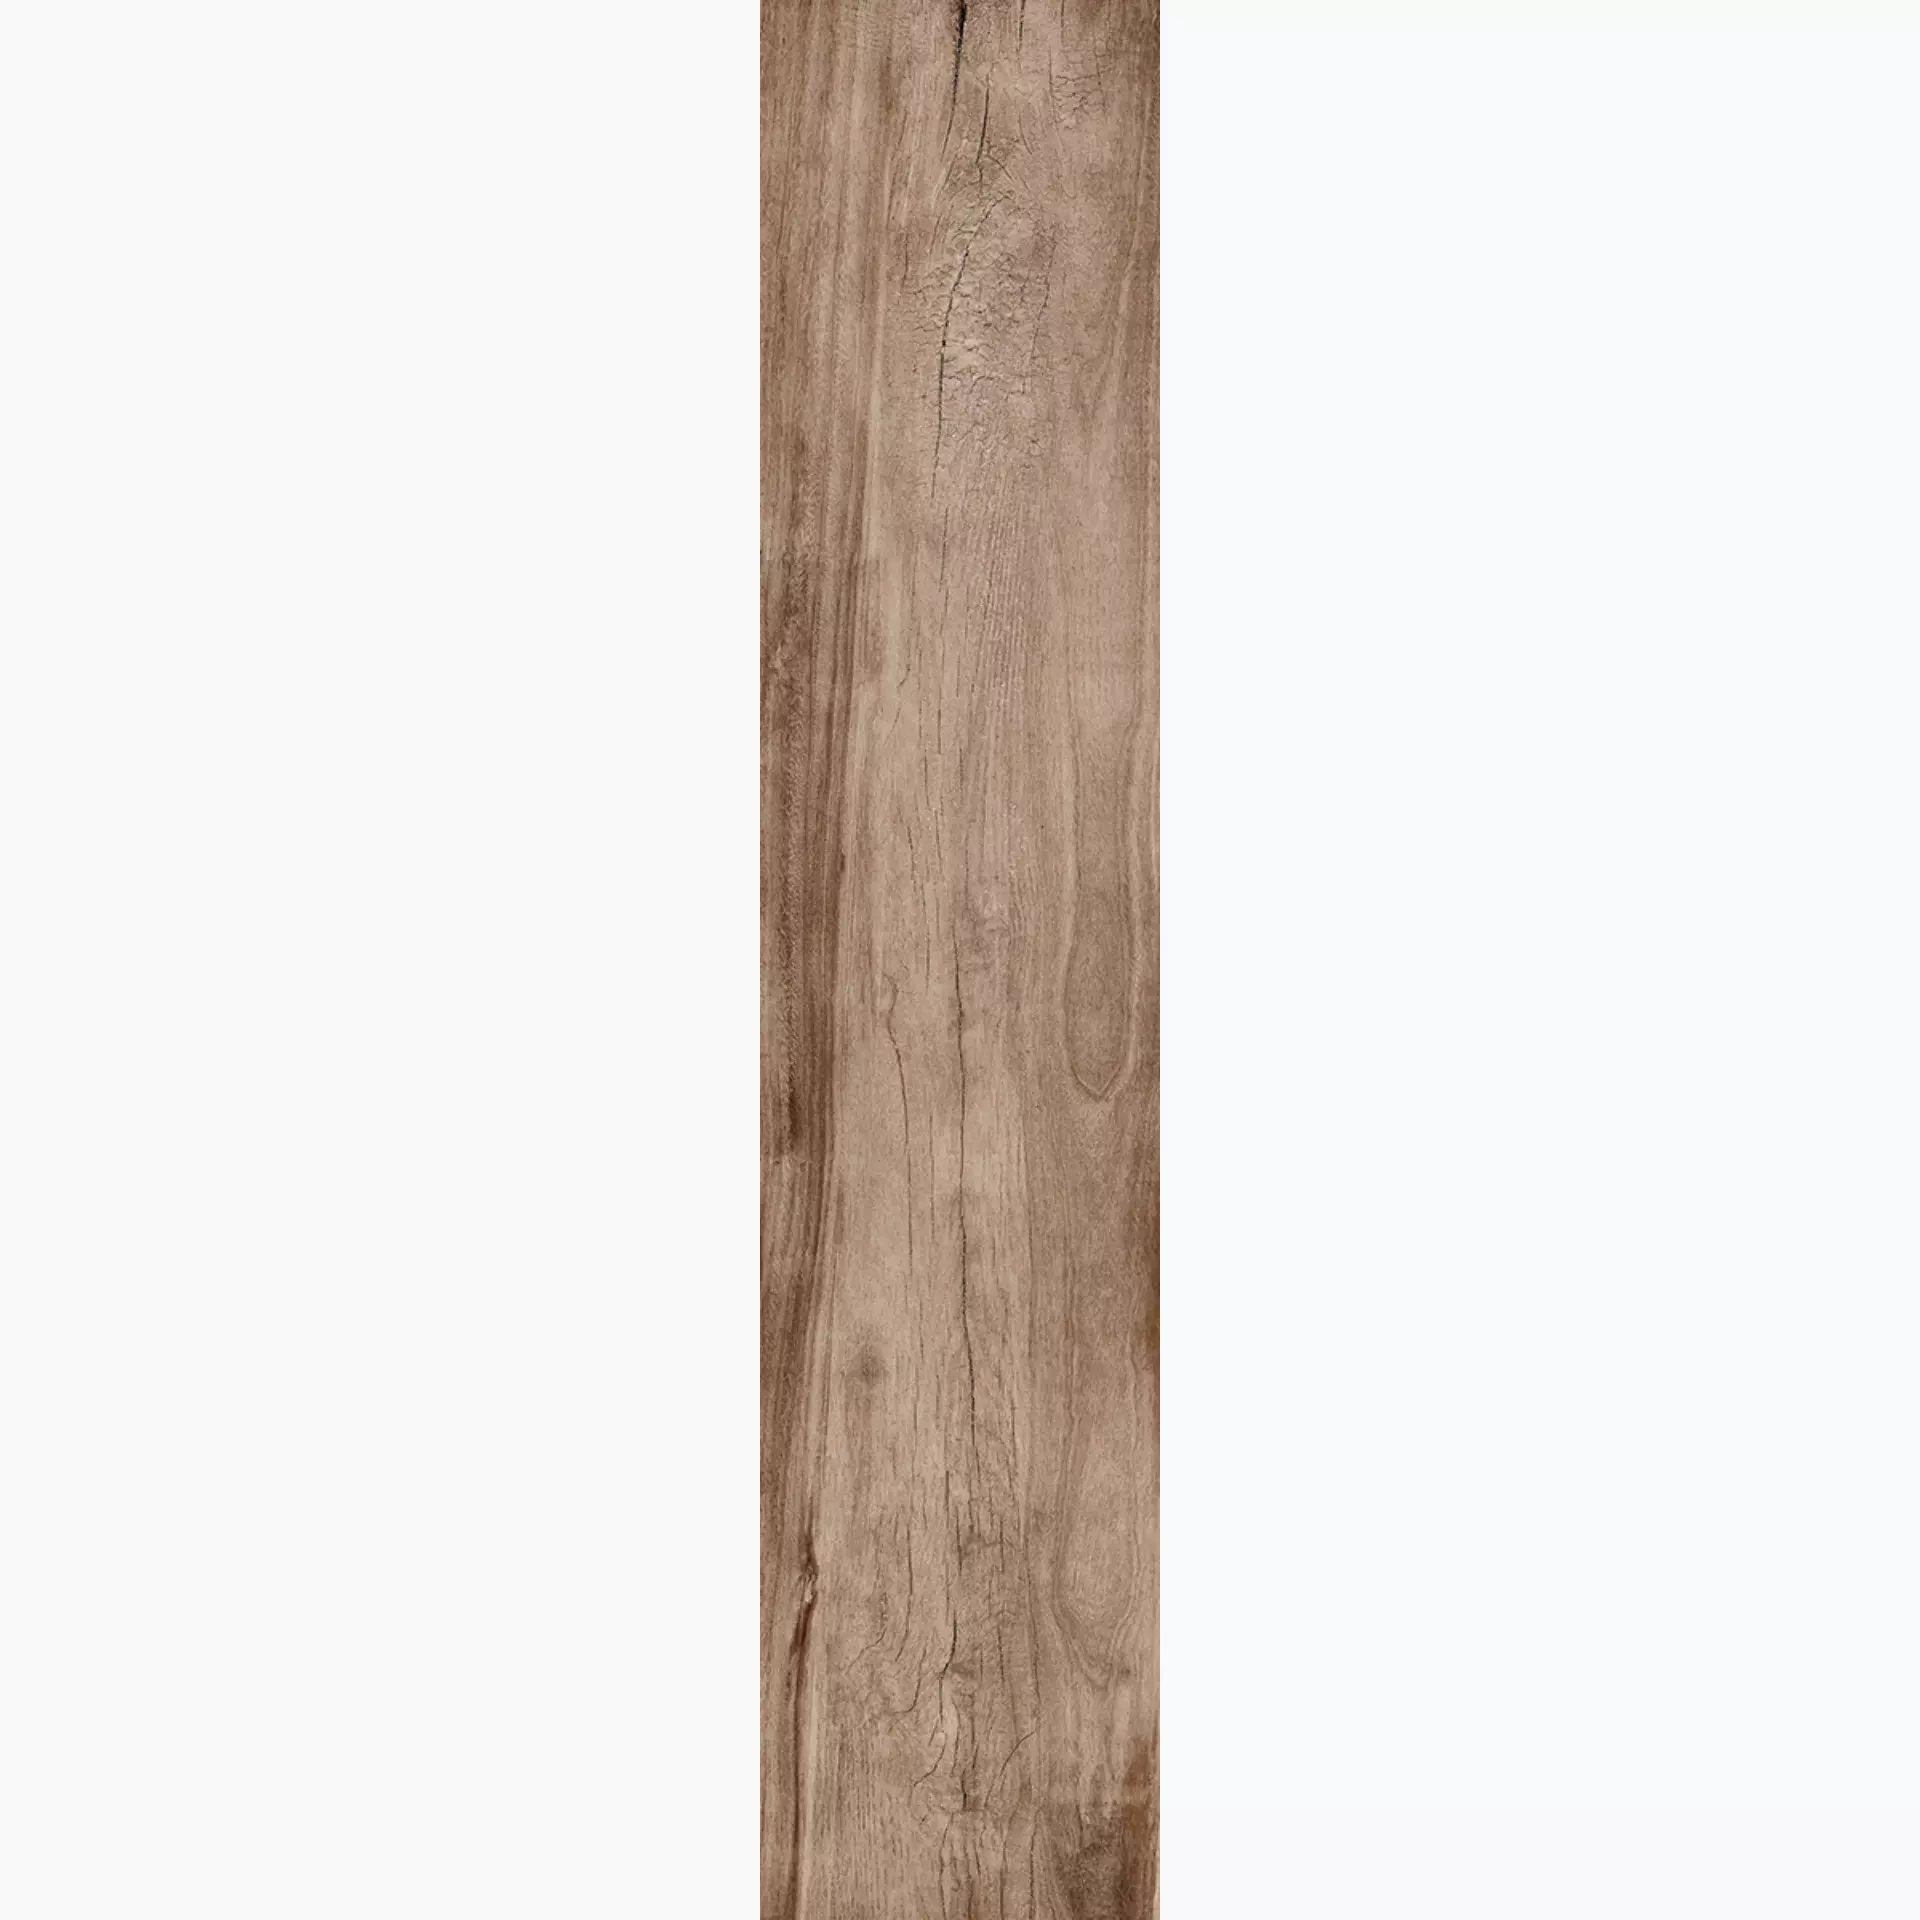 Rondine Living Marrone Naturale J87765 20,5x100cm 9,5mm